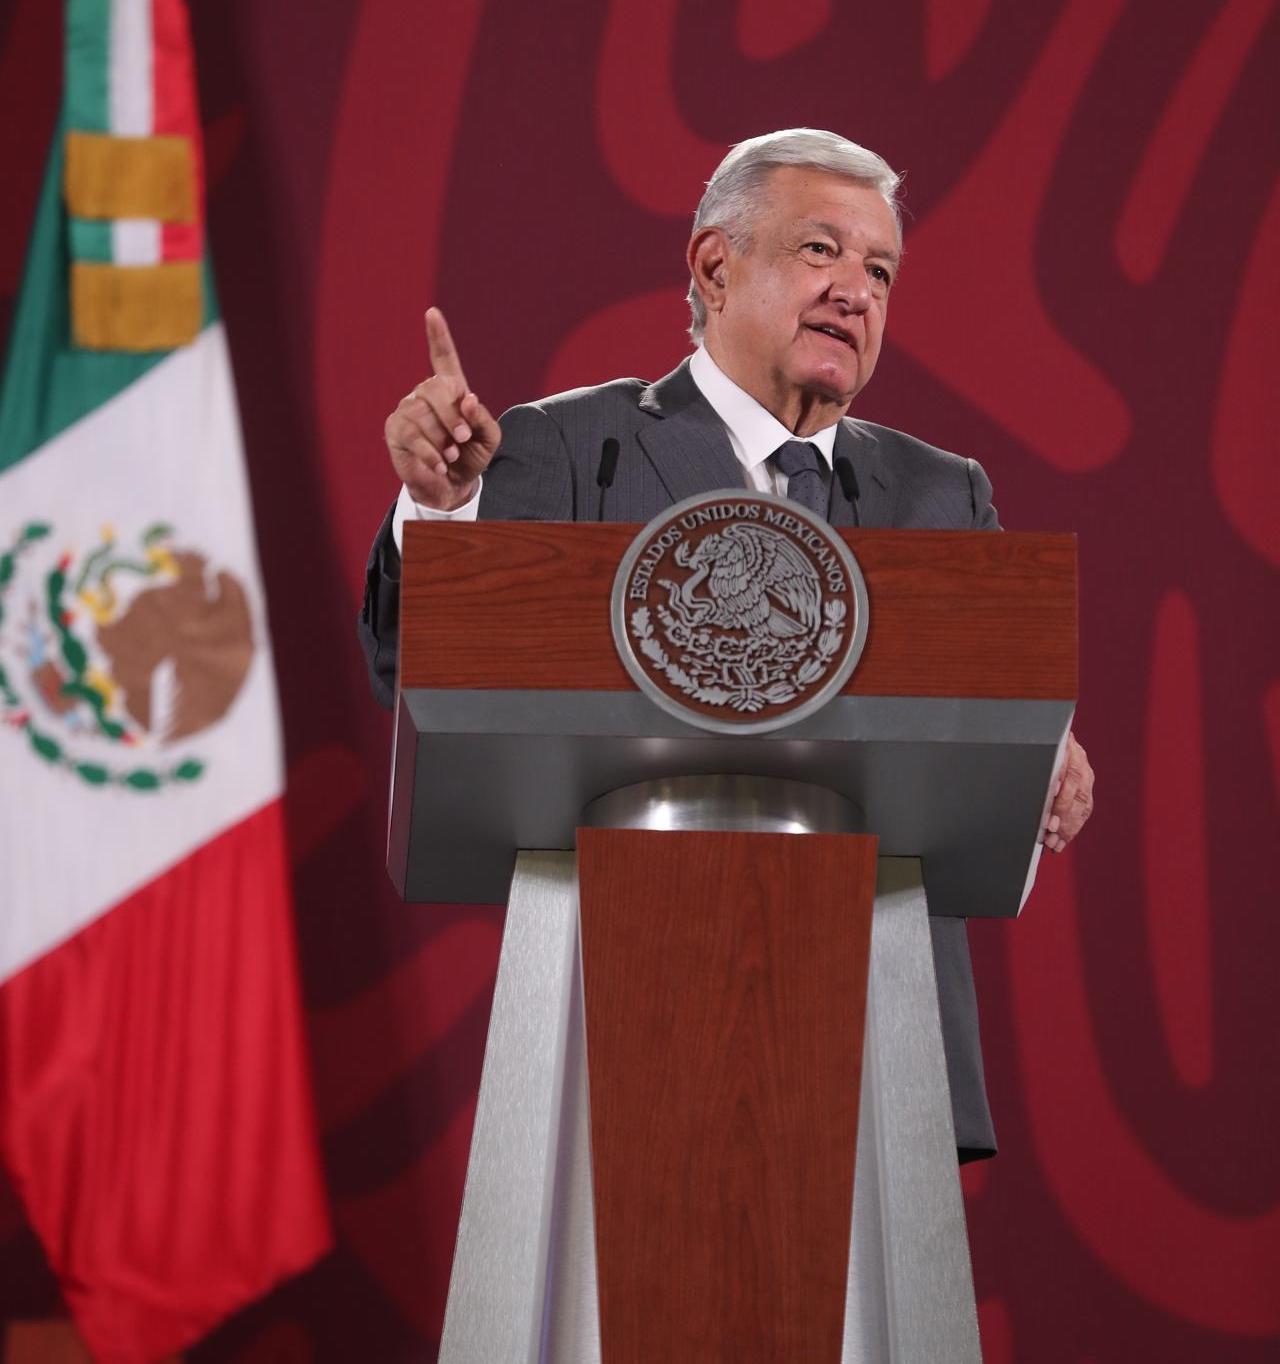 López Obrador viajará a Perú para la cumbre de la Alianza del Pacífico